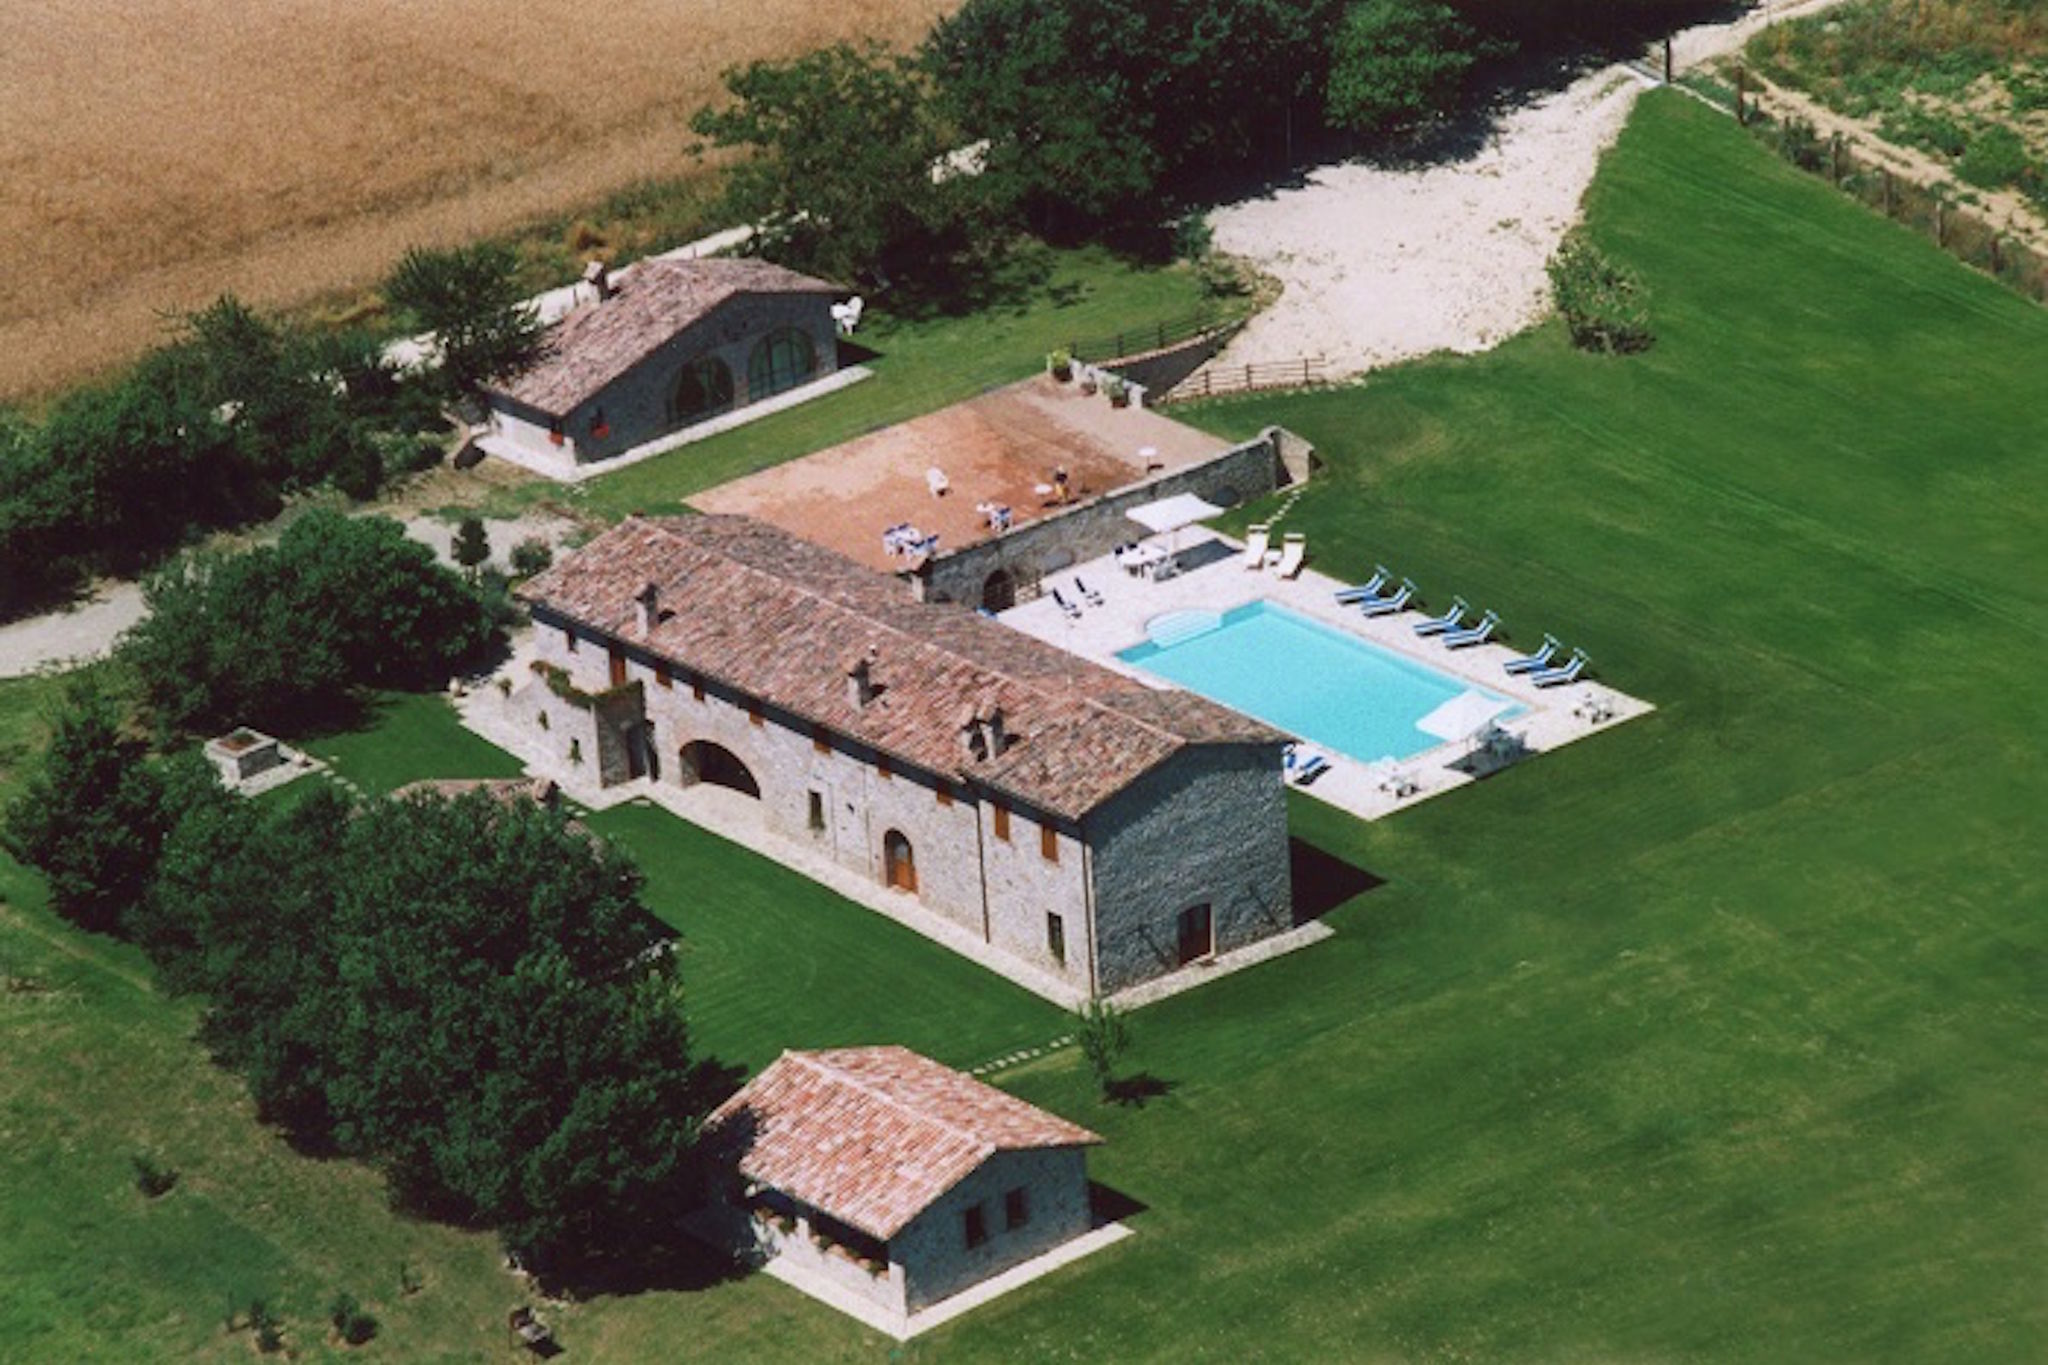 Appartement in een oude boerderij in Umbrië met zwembad